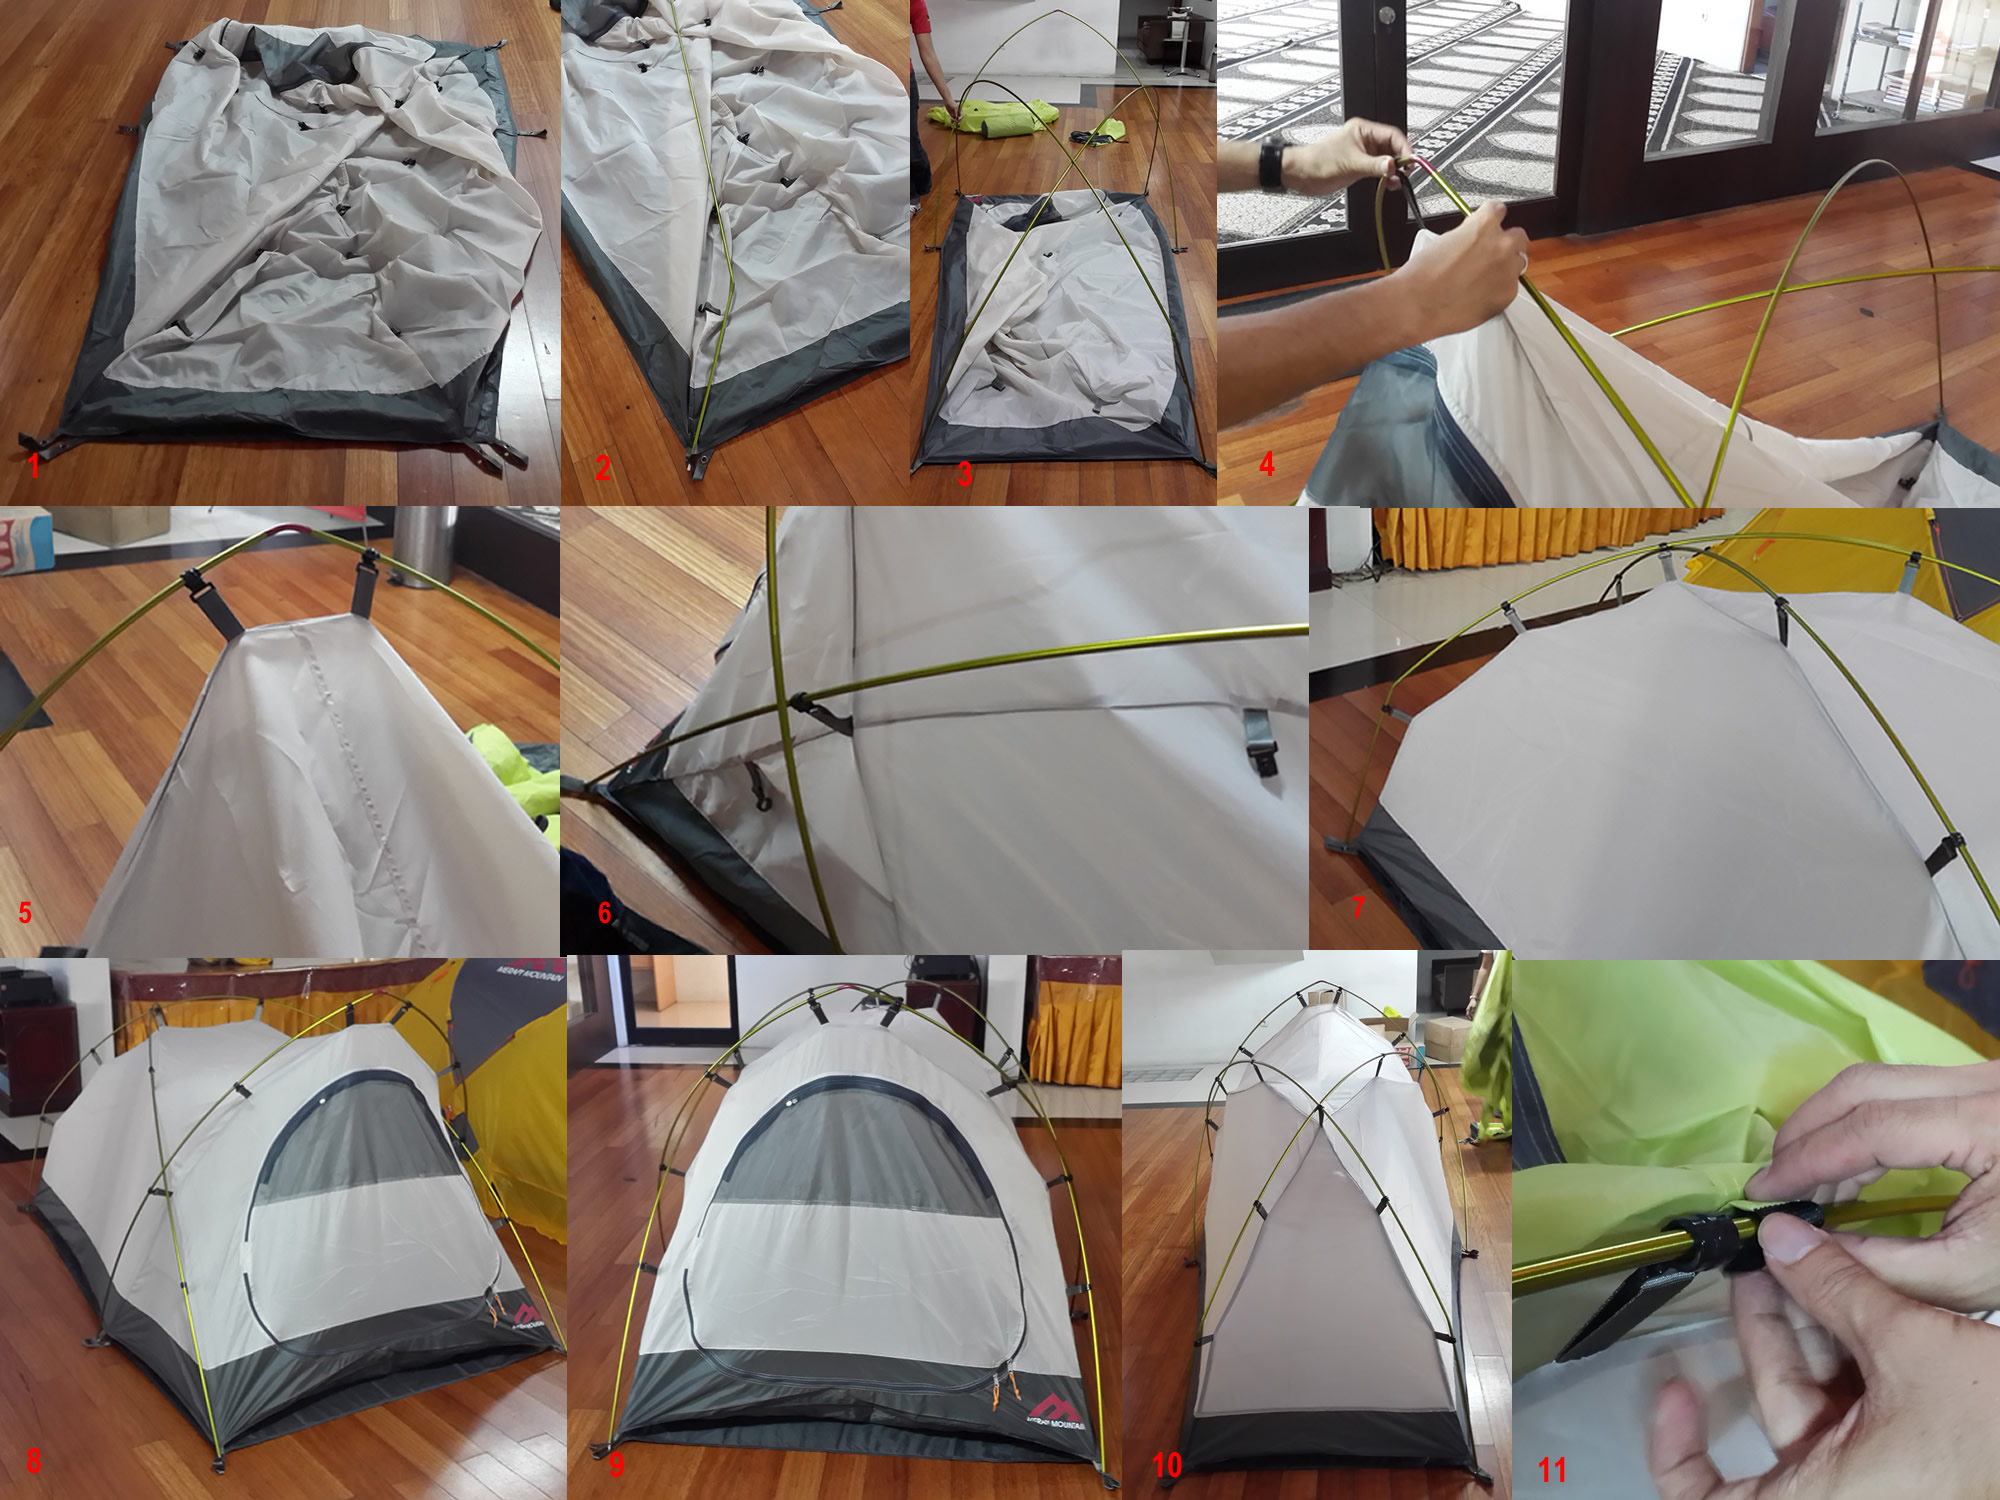  Cara Membongkar Tenda yang Benar Bromo Travelindo